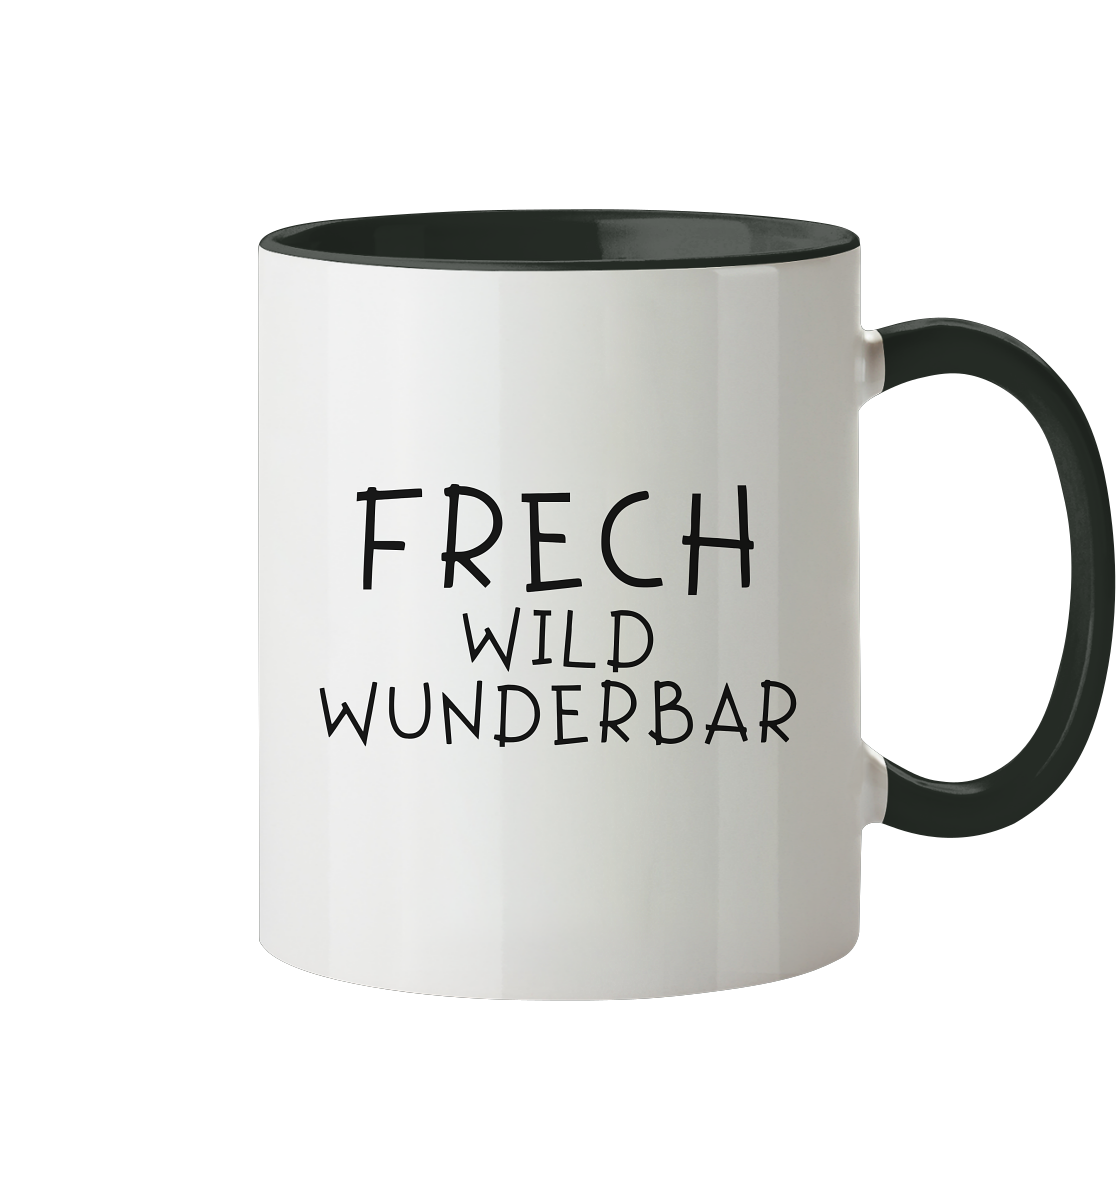 FRECH WILD WUNDERBAR - Tasse zweifarbig